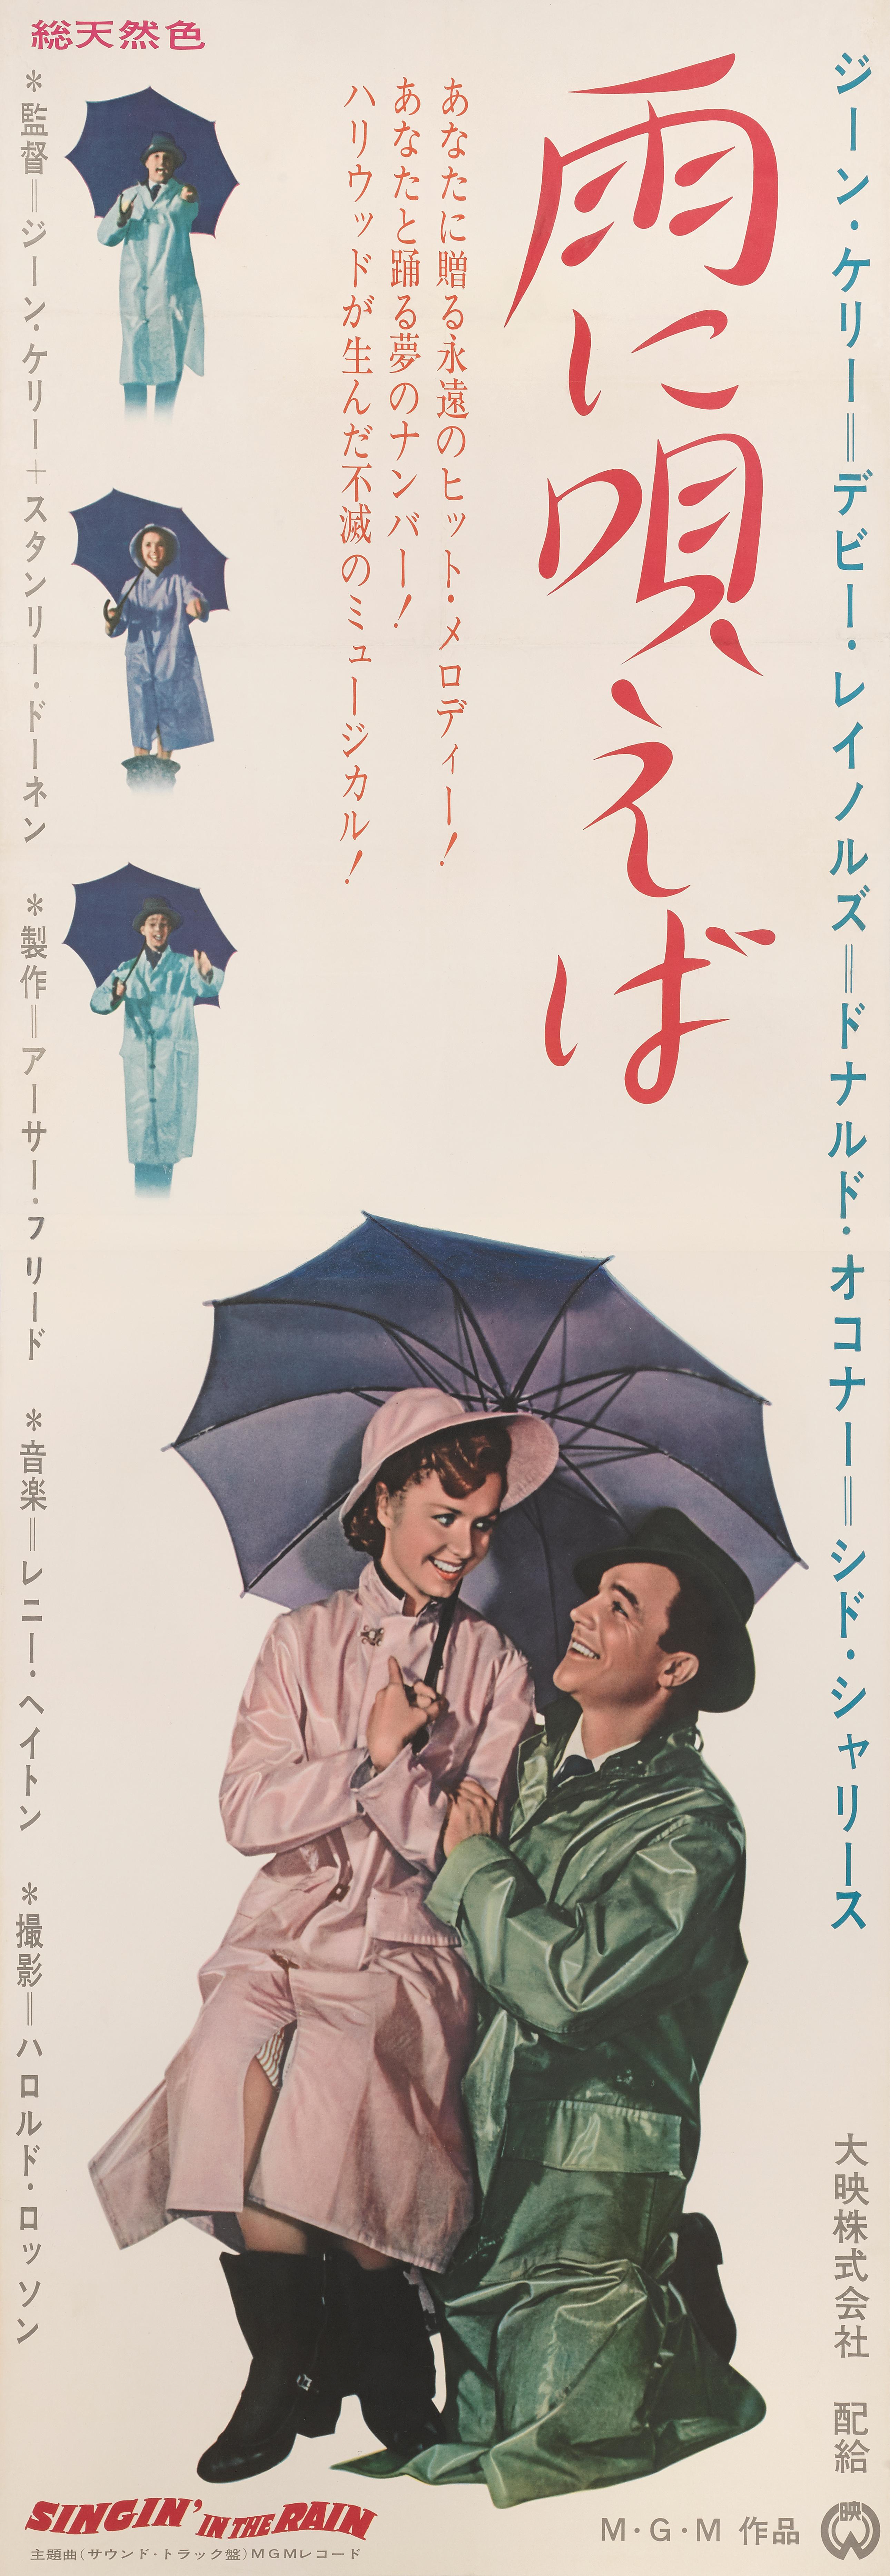 Affiche originale japonaise pour la comédie musicale classique de 1952.
Cette comédie musicale romantique a été réalisée et chorégraphiée par Gene Kelly et Stanley Donen. Kelly, Donald O'Connor et Debbie Reynolds y figurent également. Il montre